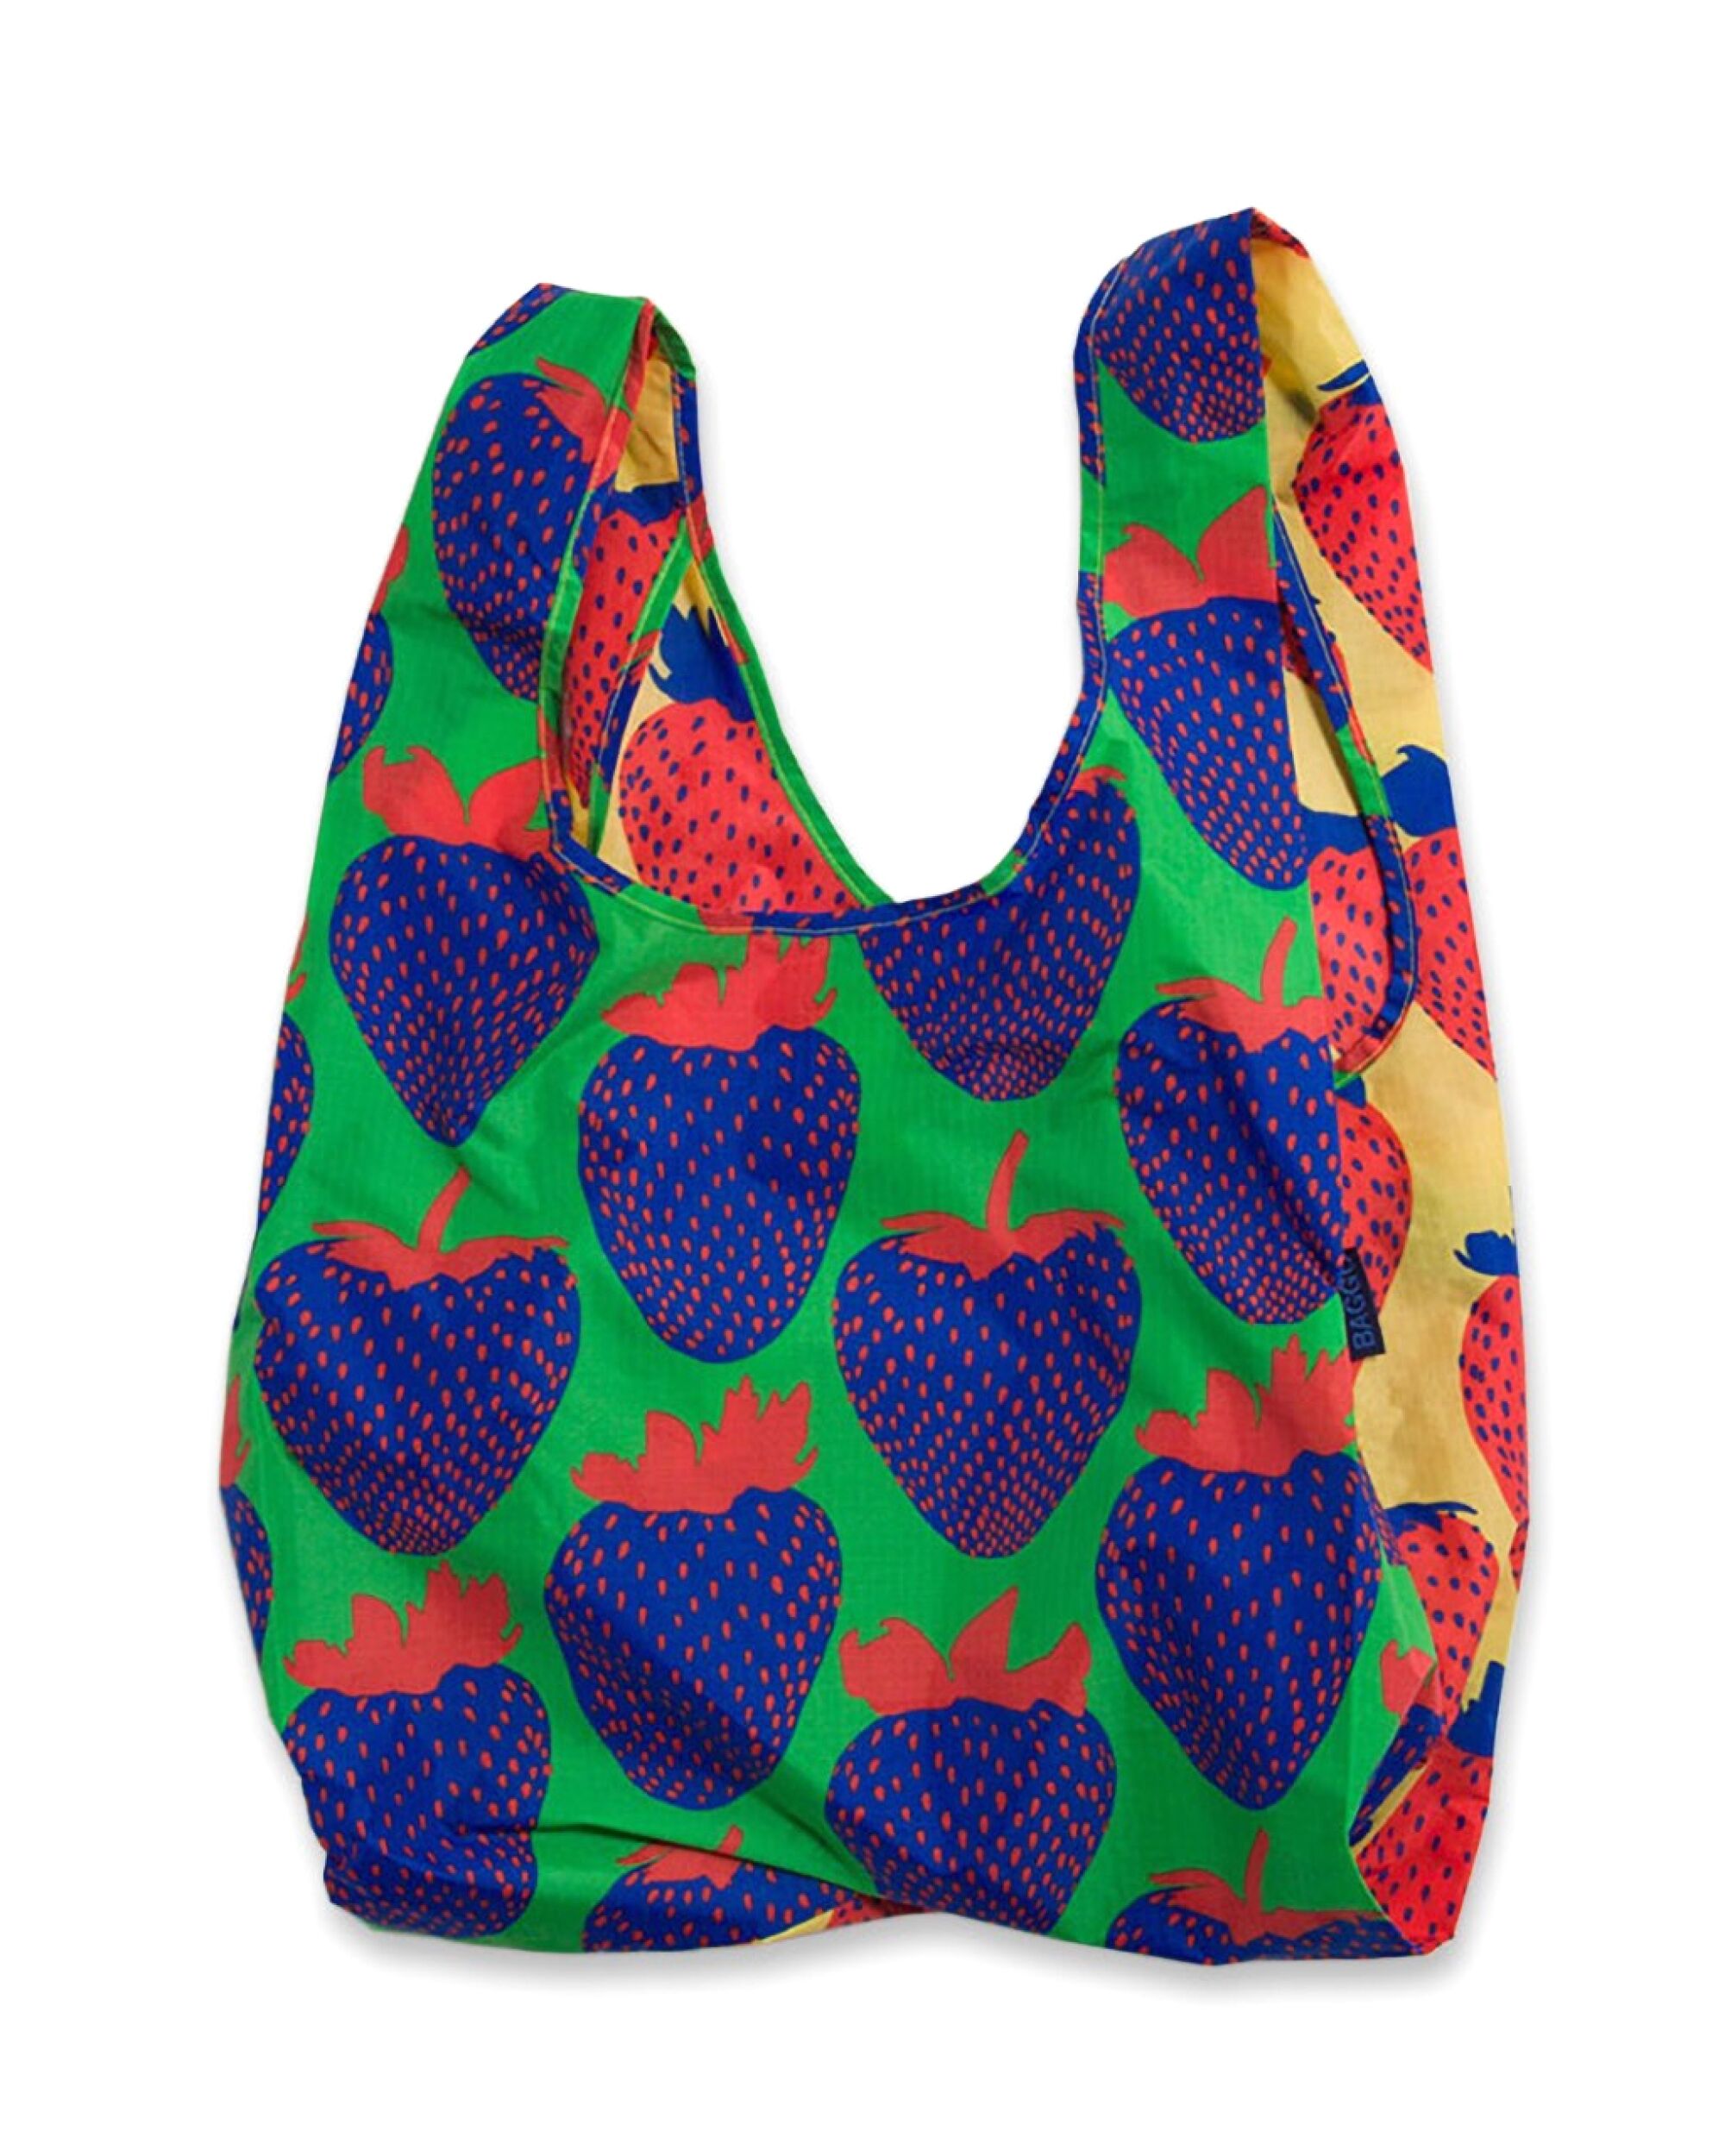 Baggu's strawberry reusable bag 